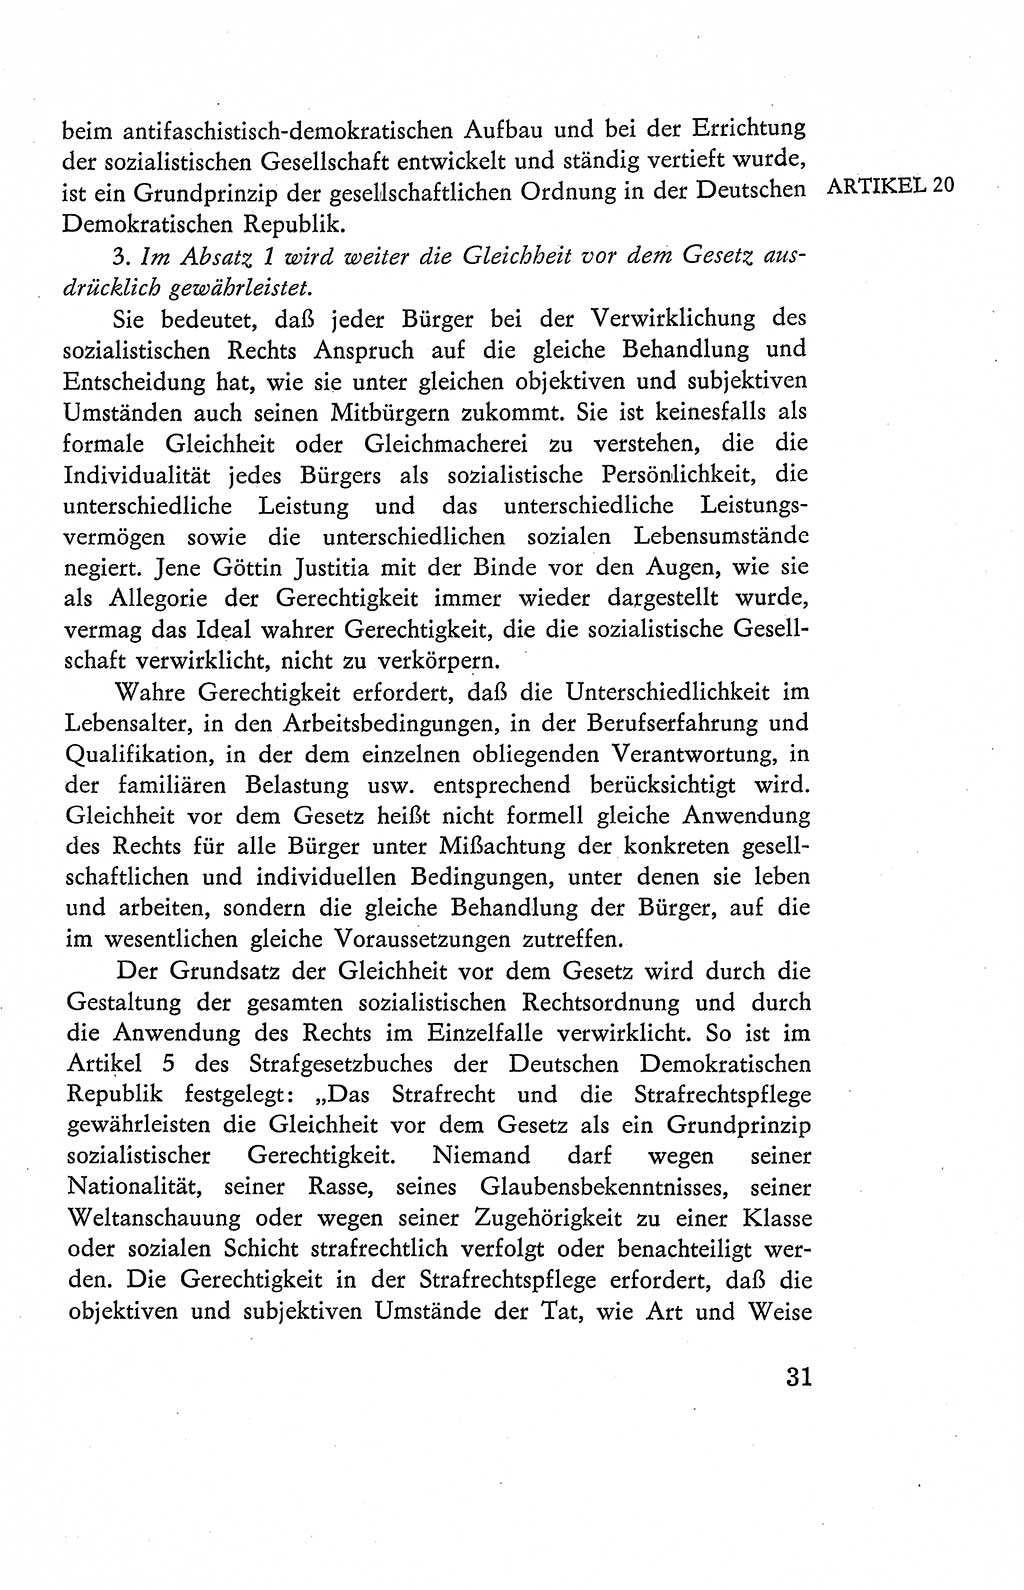 Verfassung der Deutschen Demokratischen Republik (DDR), Dokumente, Kommentar 1969, Band 2, Seite 31 (Verf. DDR Dok. Komm. 1969, Bd. 2, S. 31)